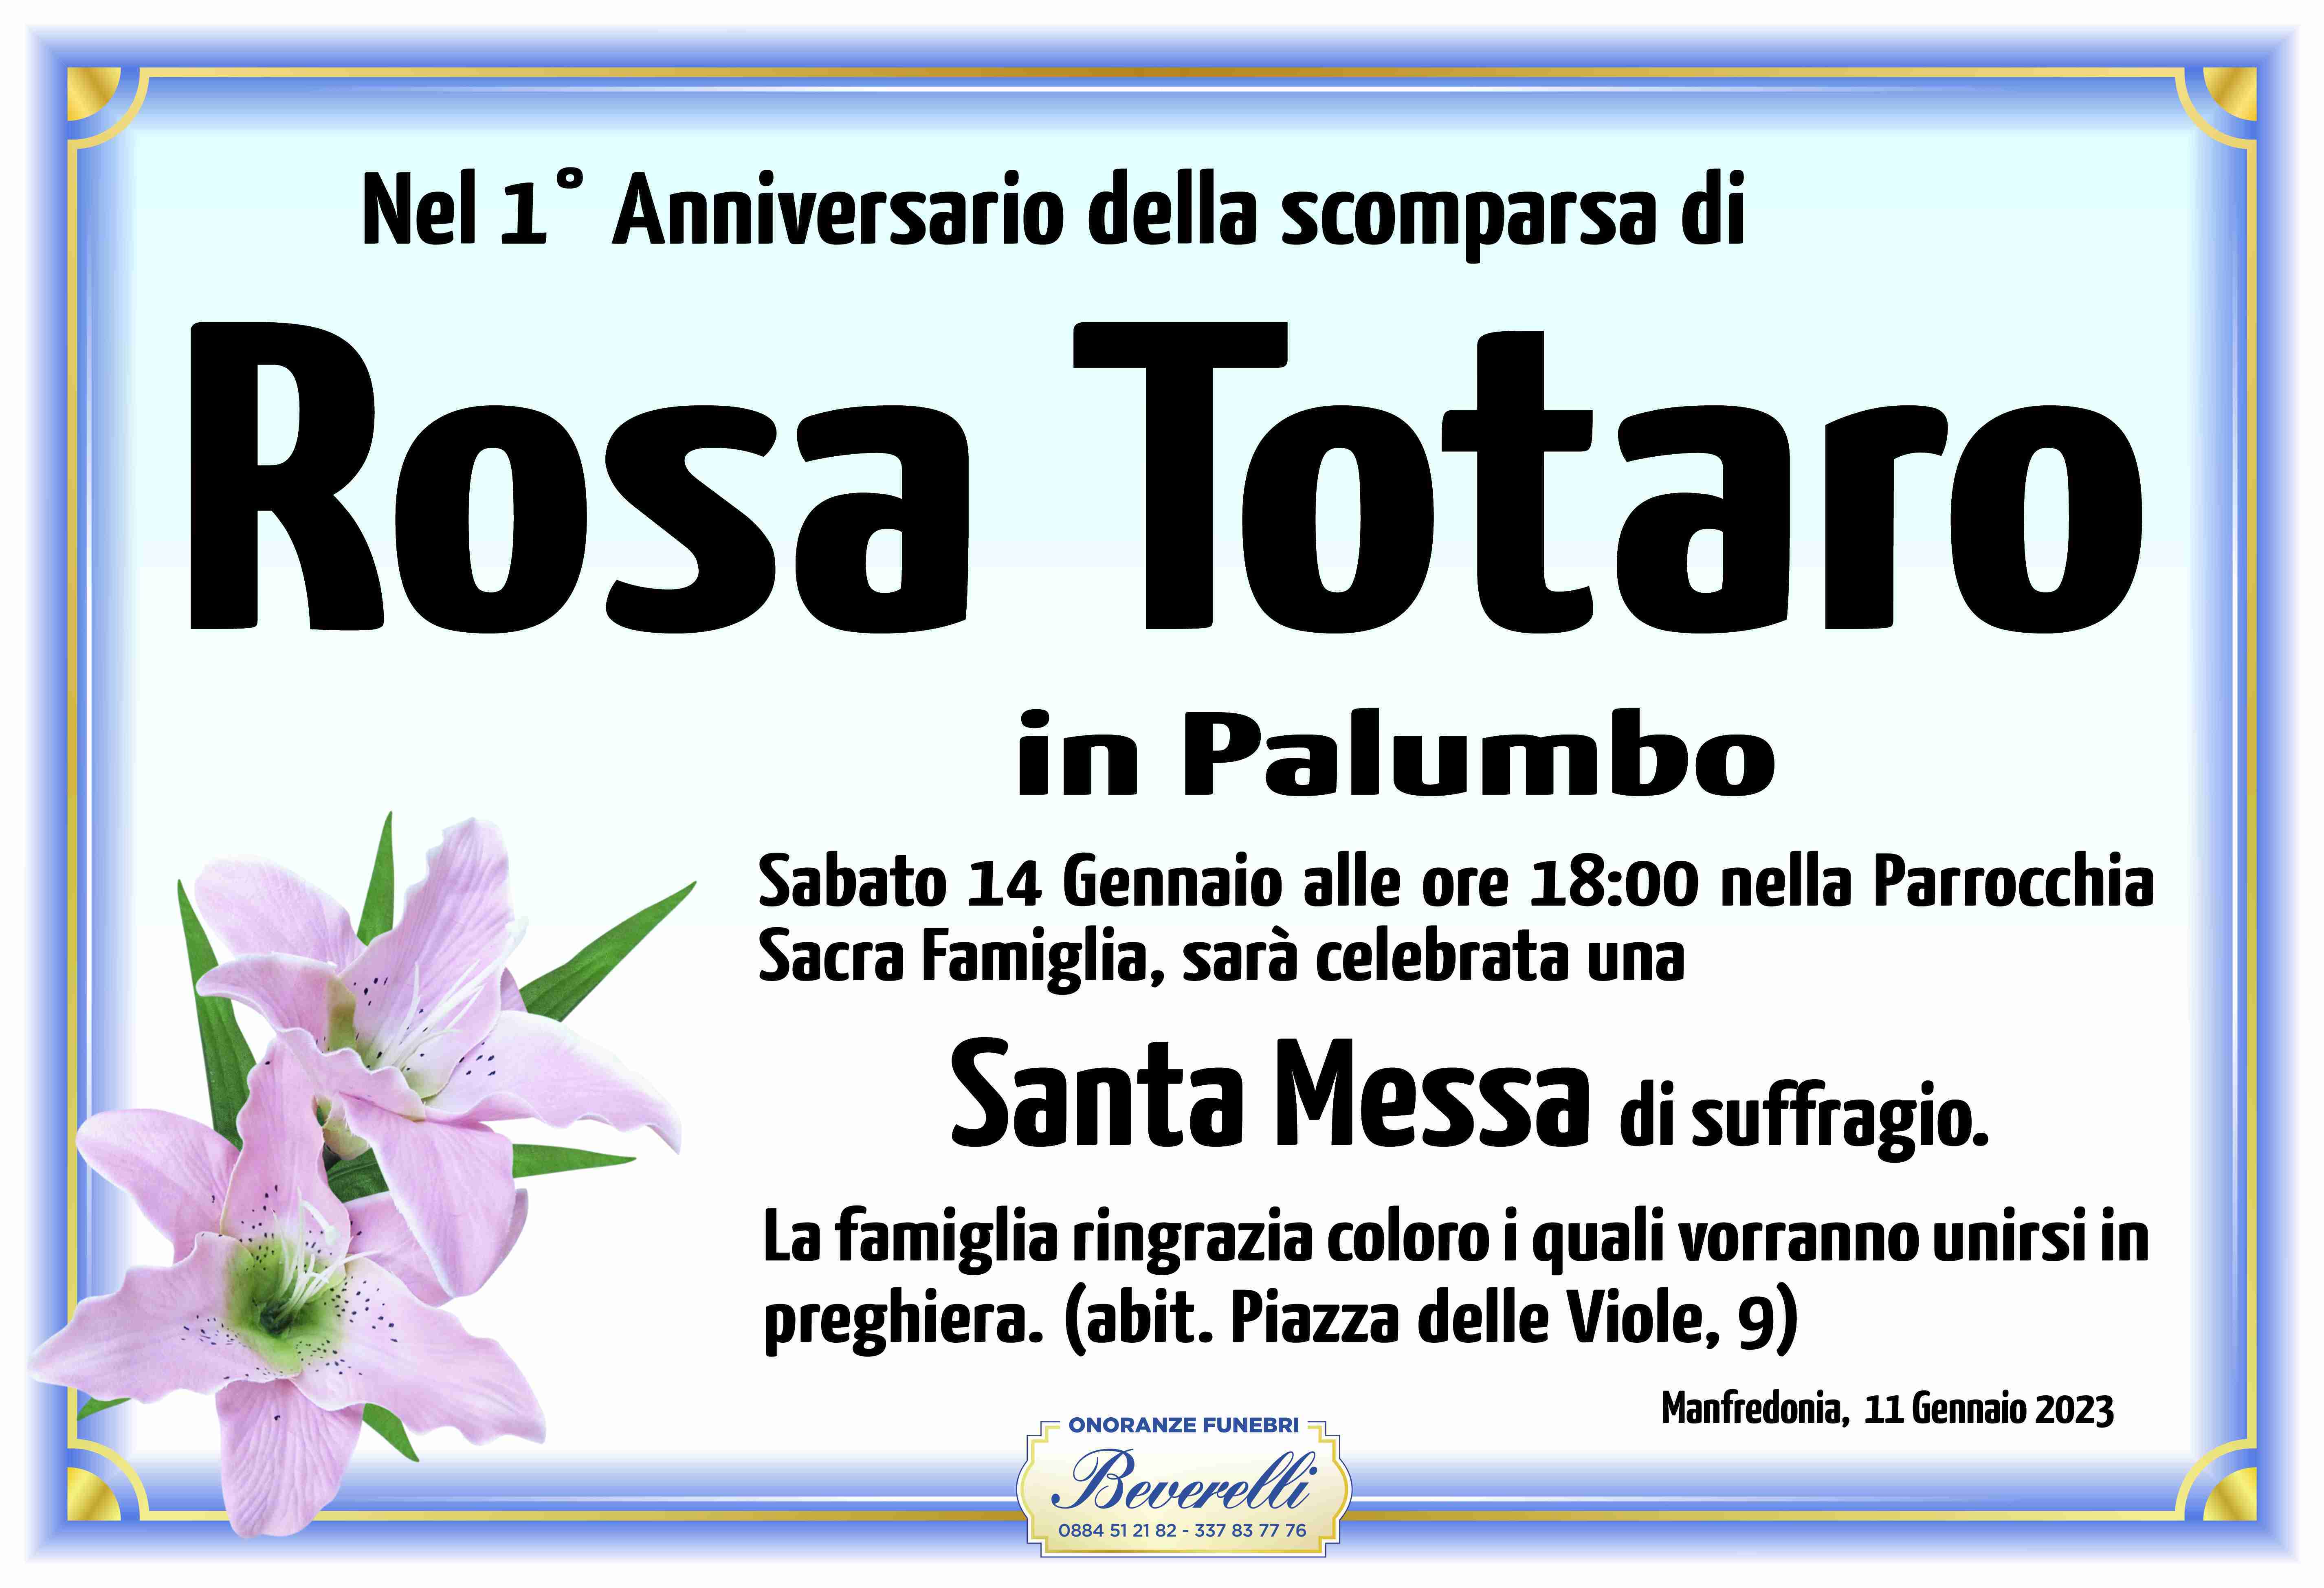 Rosa Totaro